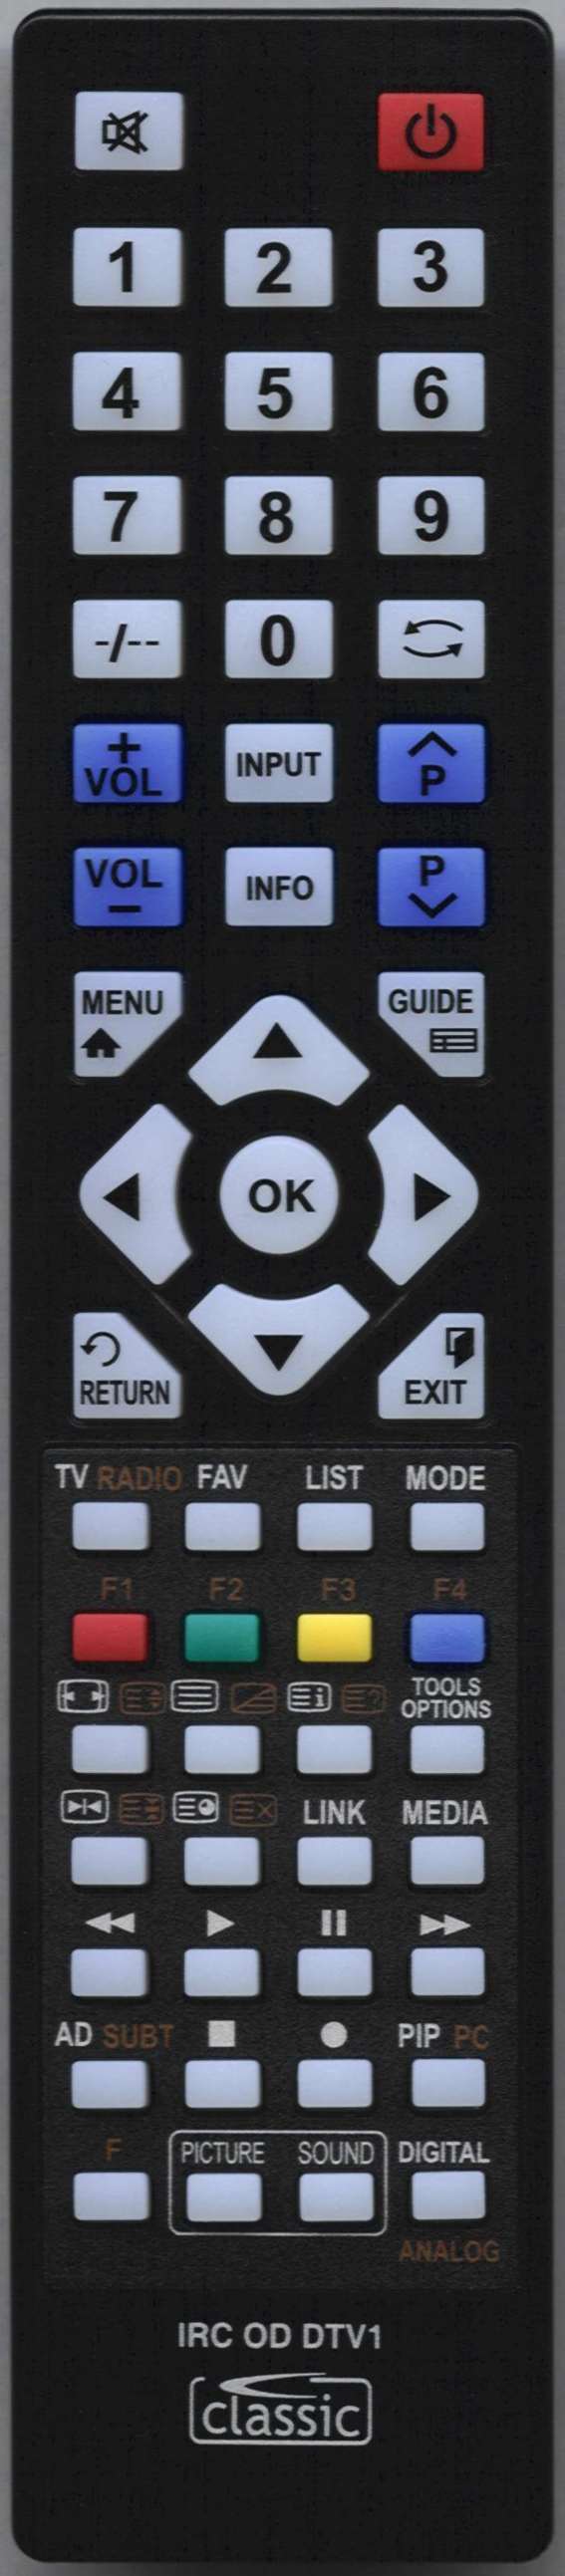 NEON C3298F Remote Control